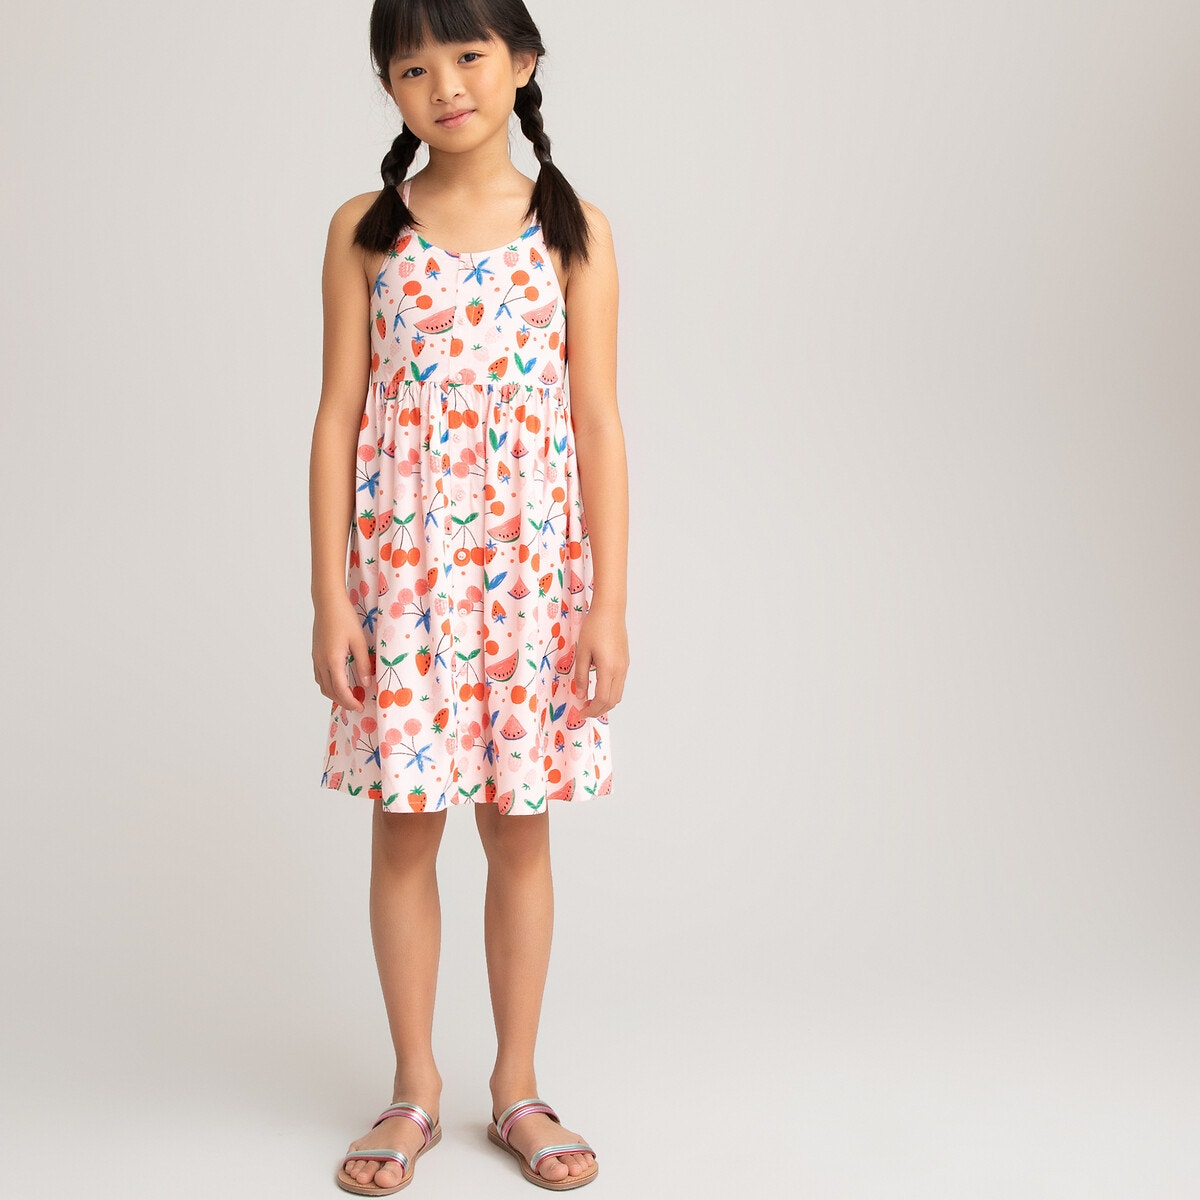 ΠΑΙΔΙ | Φορέματα | Αμάνικα Εμπριμέ χυτό φόρεμα με λεπτές τιράντες, 3-12 ετών